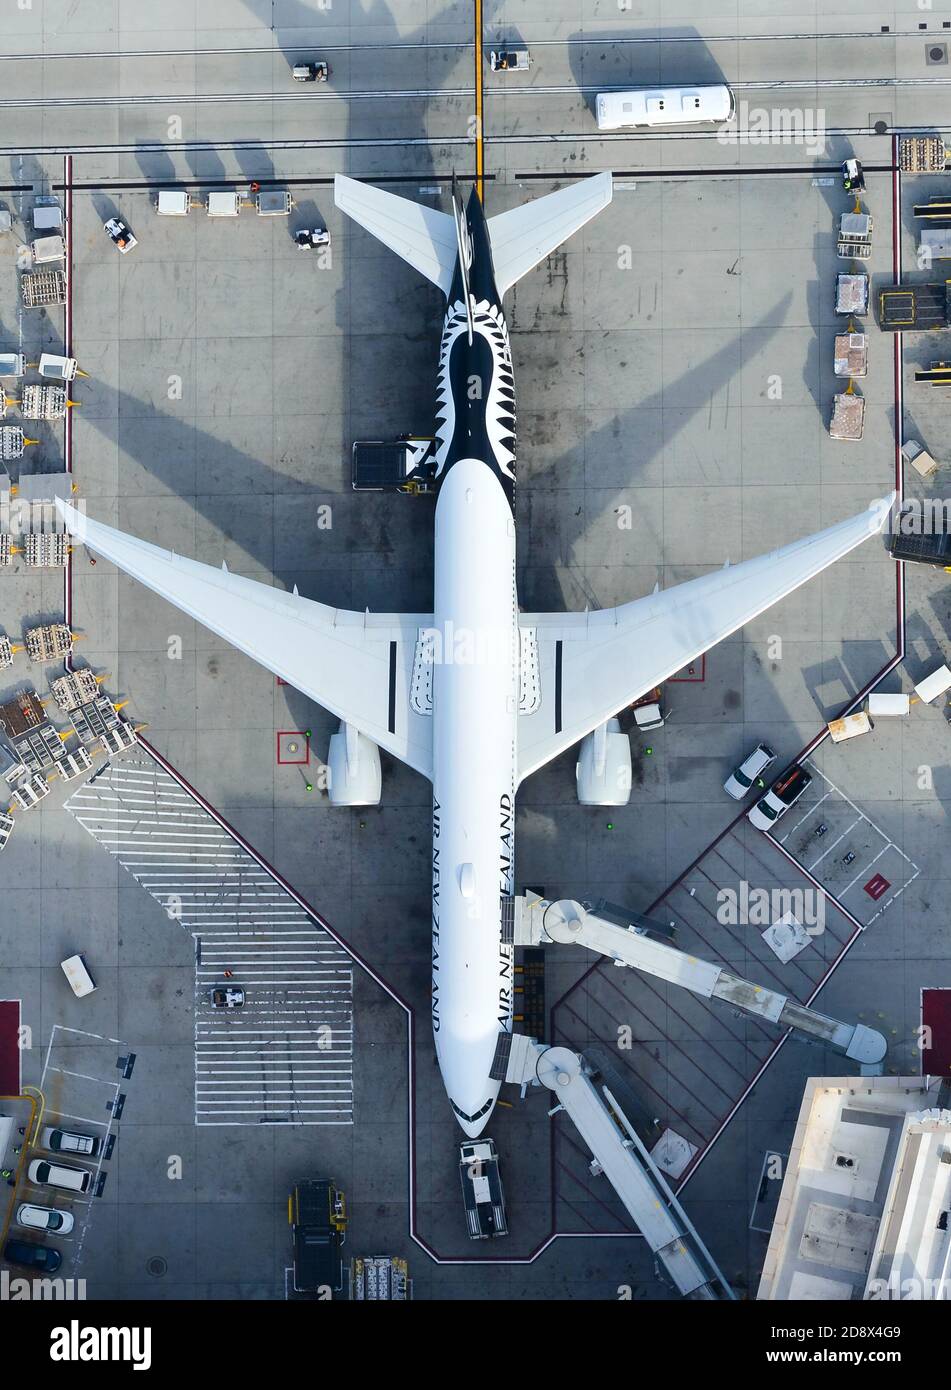 Air New Zealand Boeing 777 ha parcheggiato all'aeroporto di Los Angeles. Air NZ 777-300ER è in preparazione per il volo per l'aeroporto di Auckland. Velivolo ZK-OKO. Foto Stock